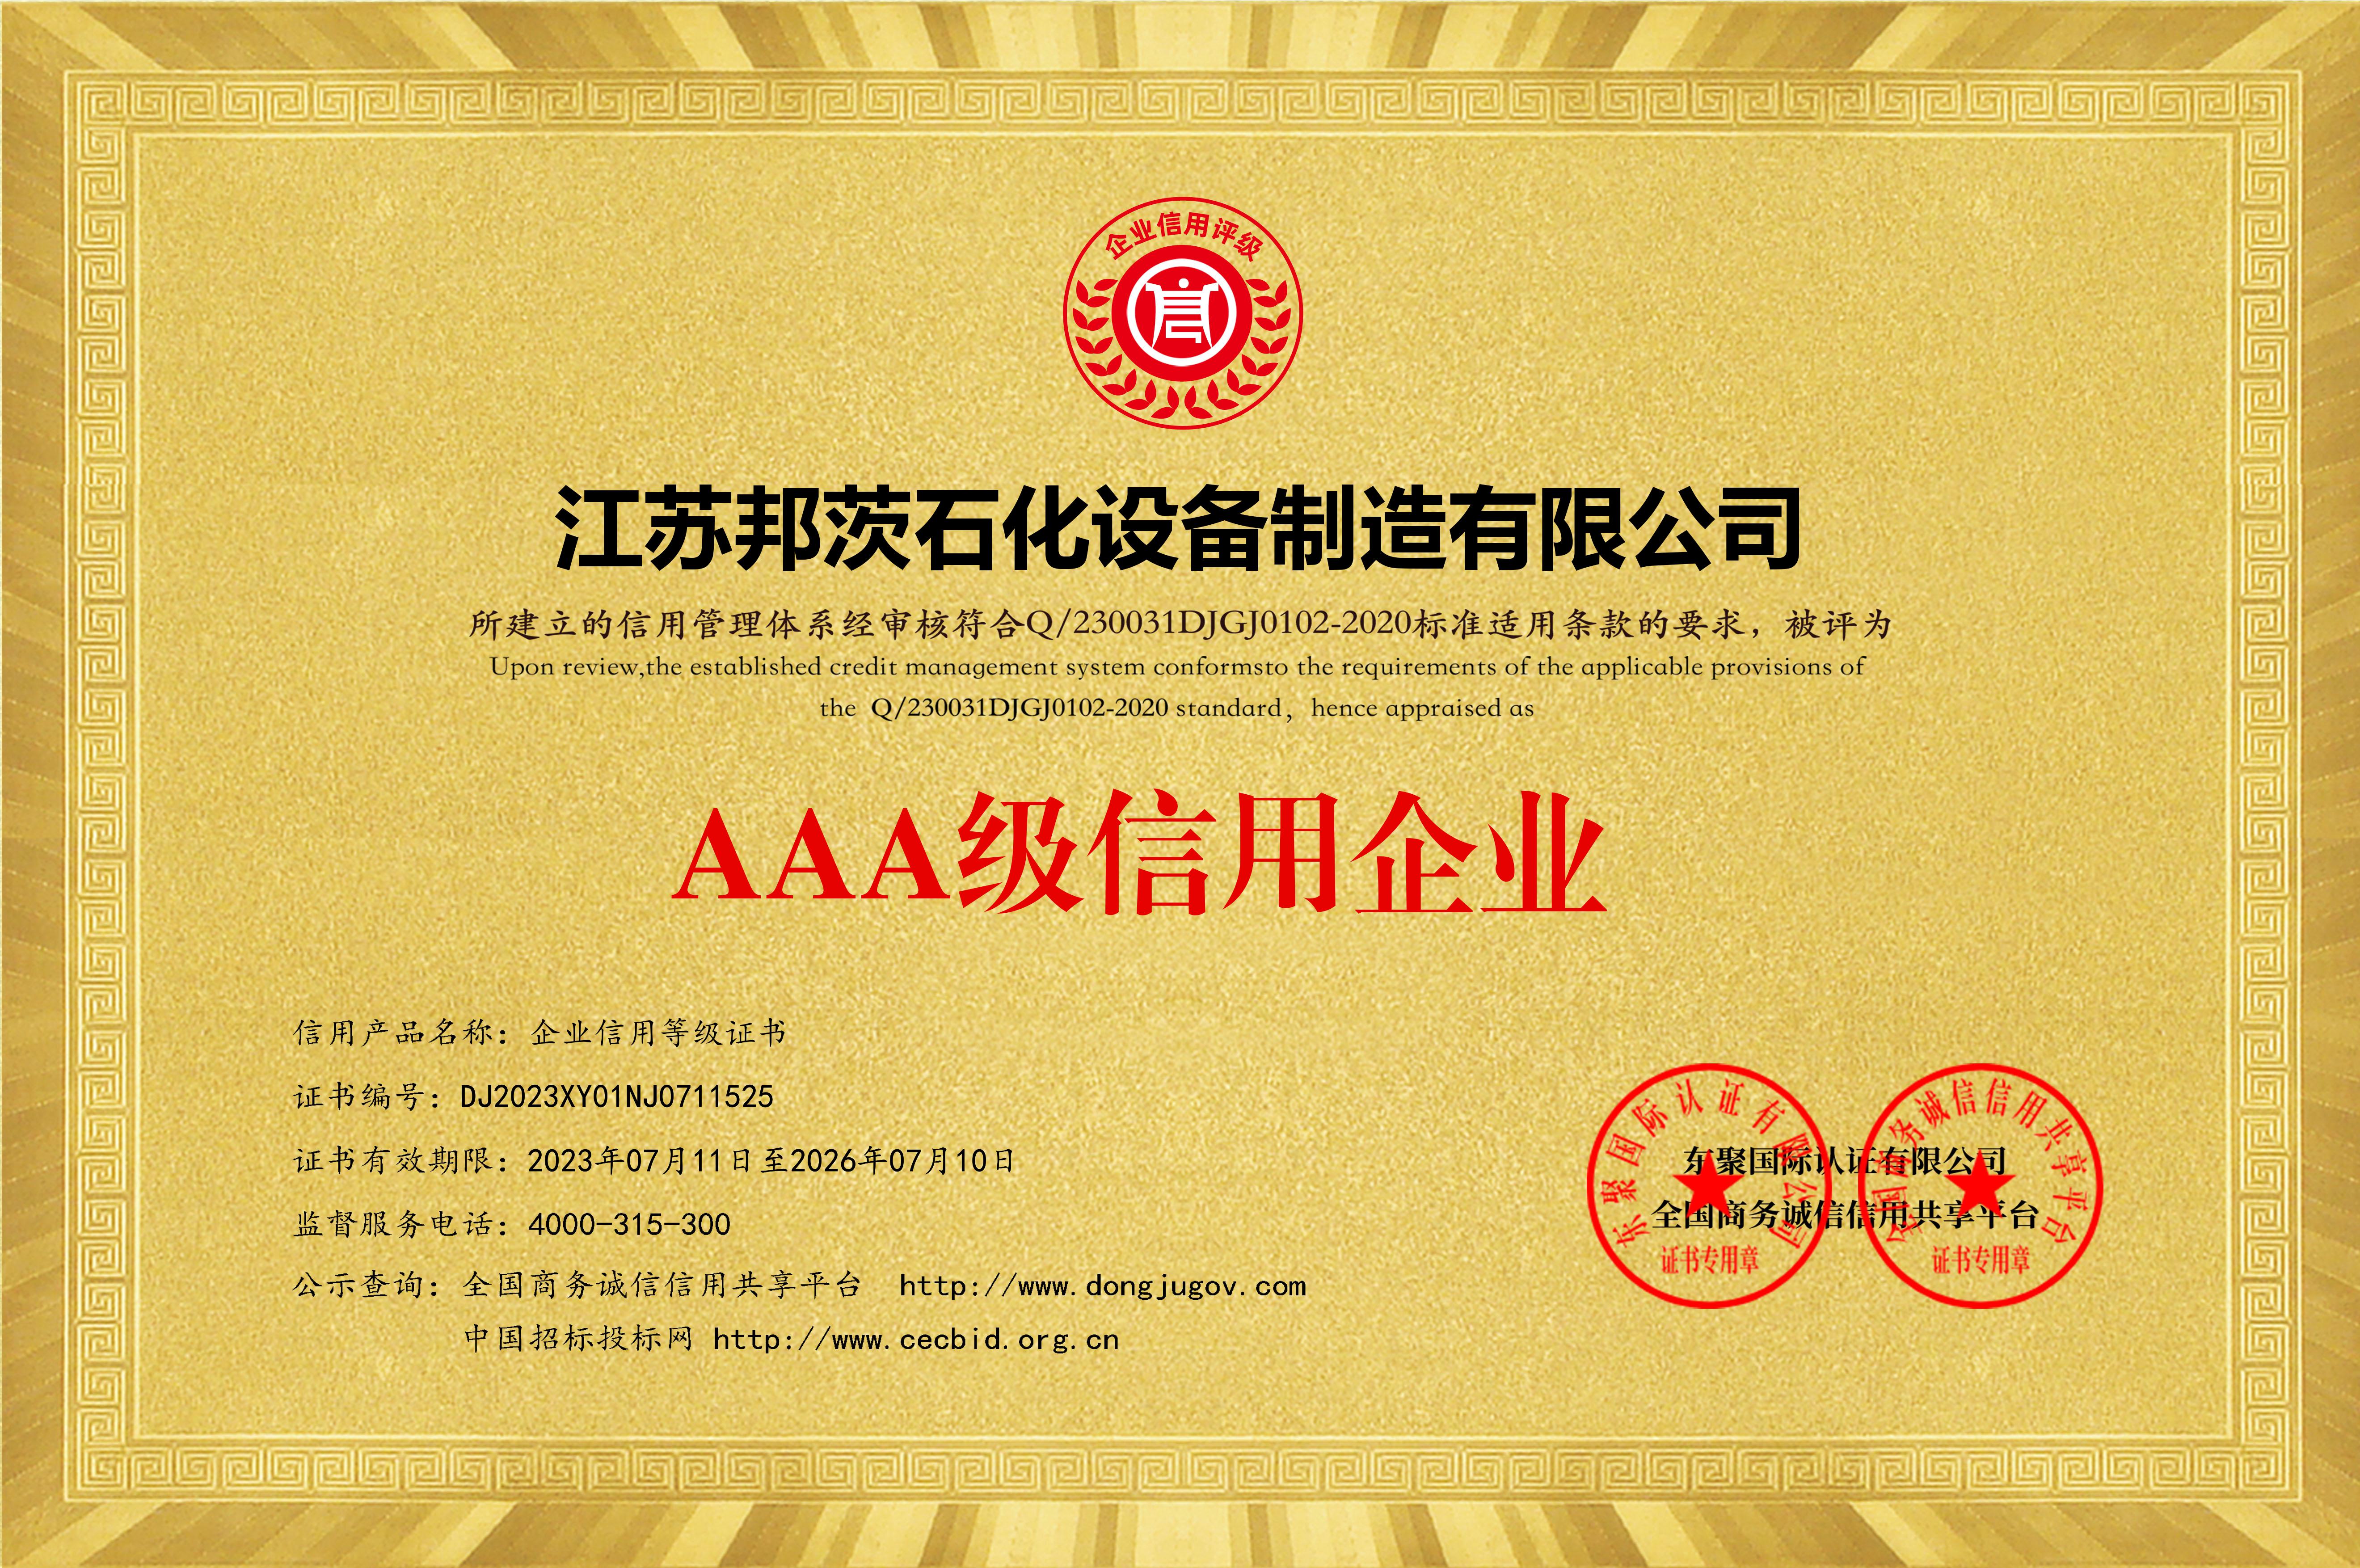 AAA級信用企業等級證書_黃色銅牌